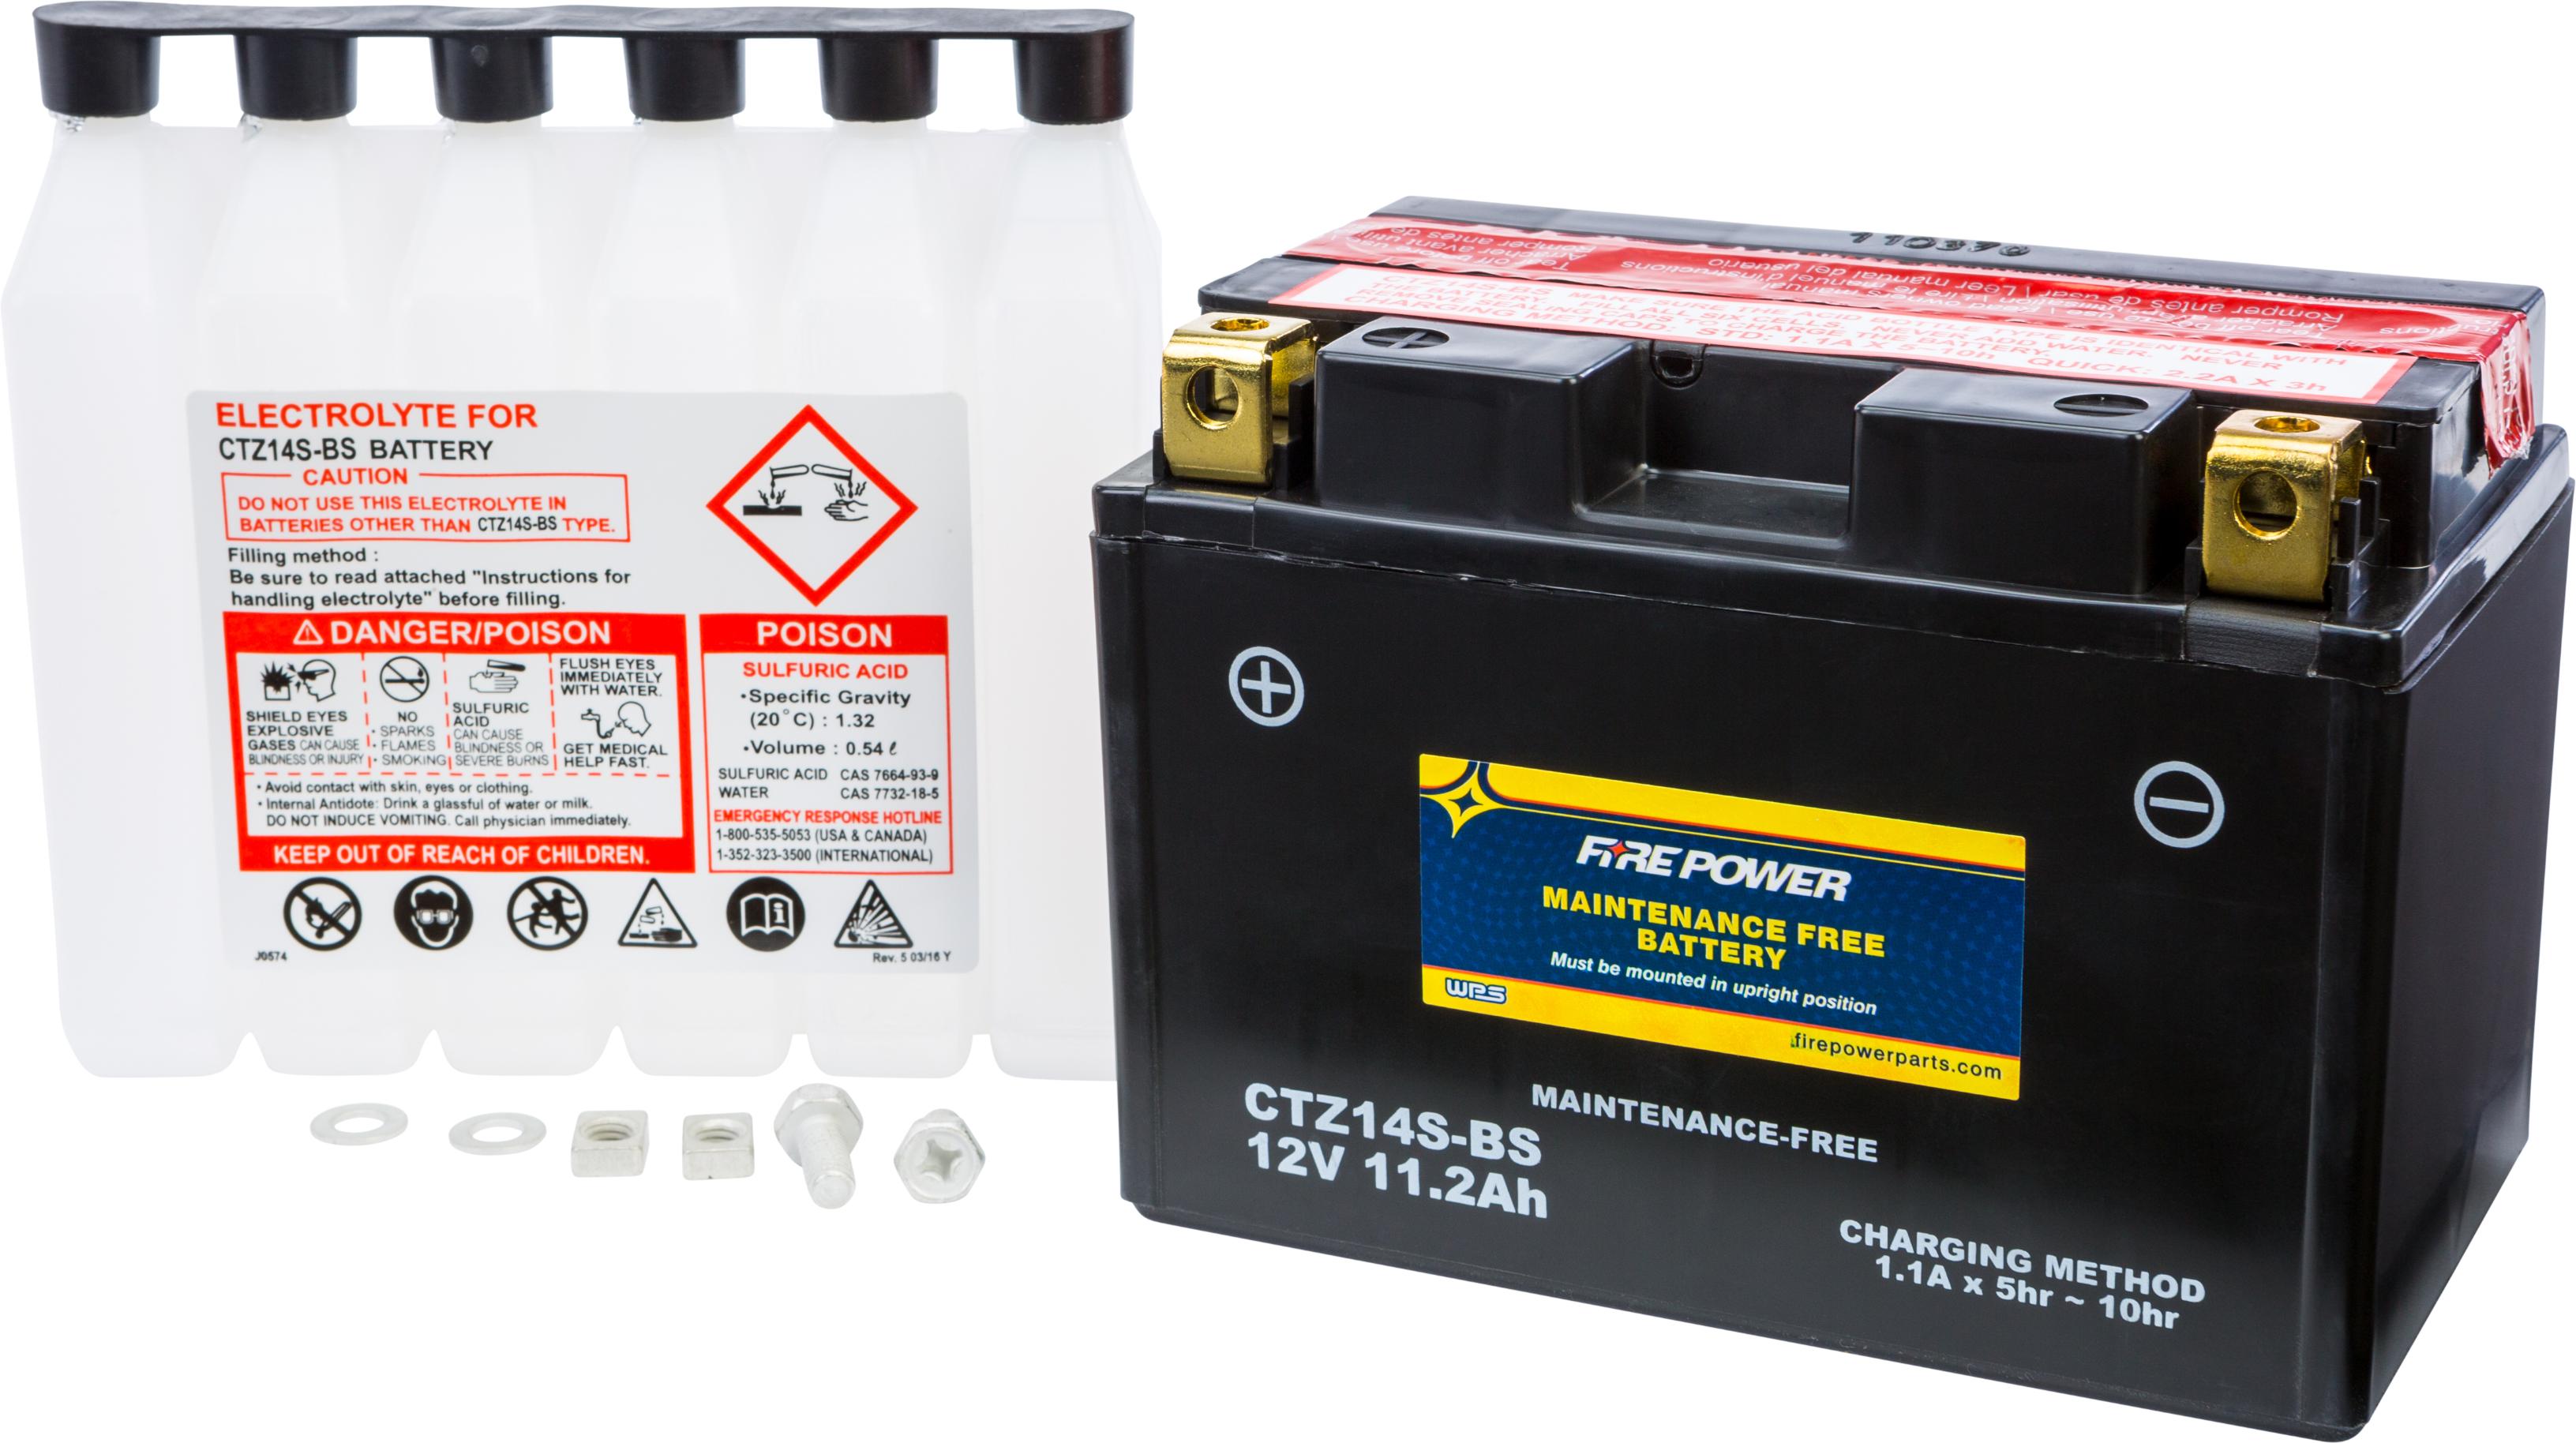 Fire Power - Battery Ctz14s-bs Maintenance Free - CTZ14S-BS